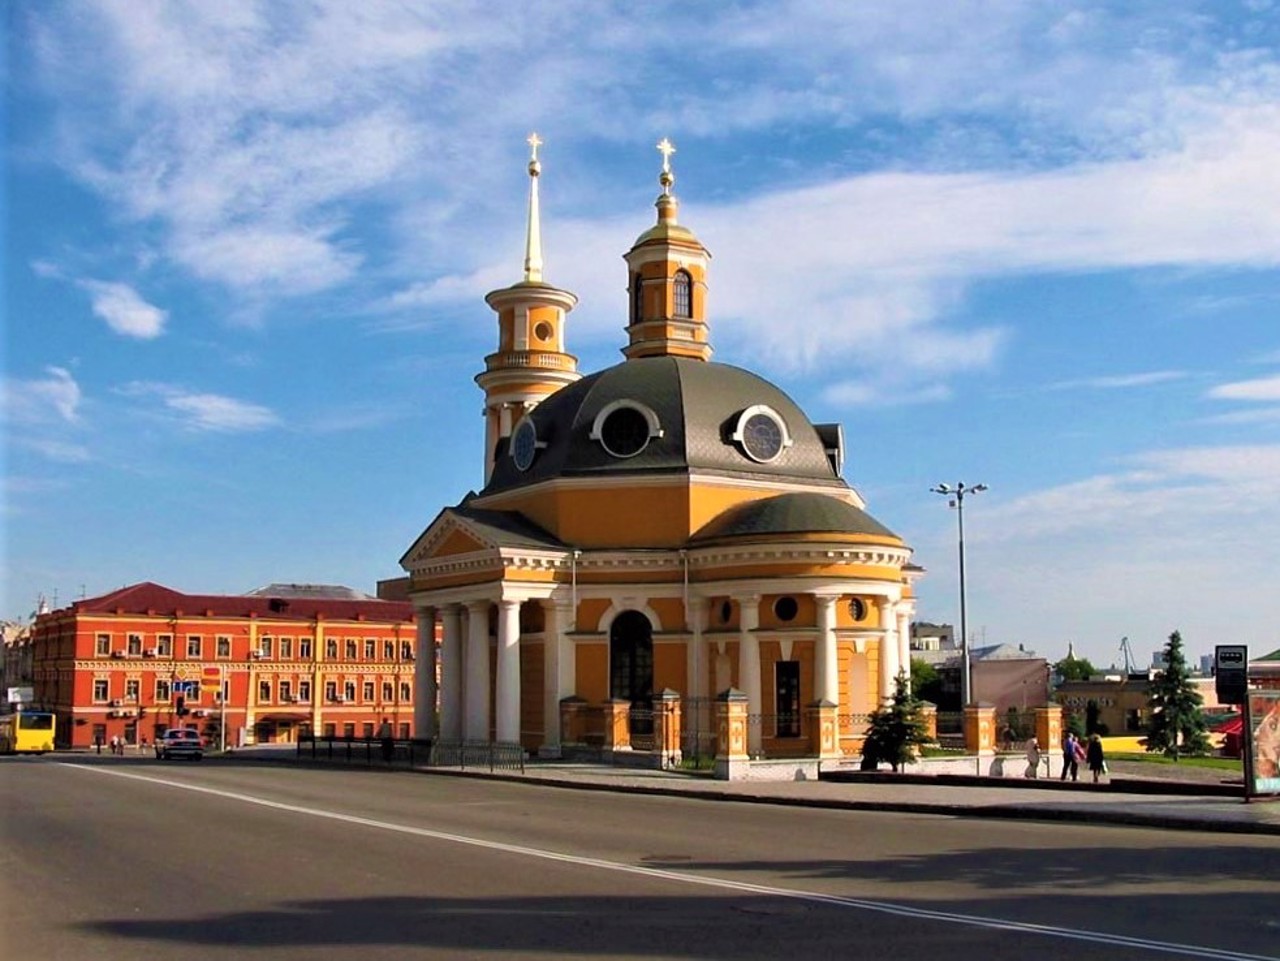 Poshtova Square, Kyiv